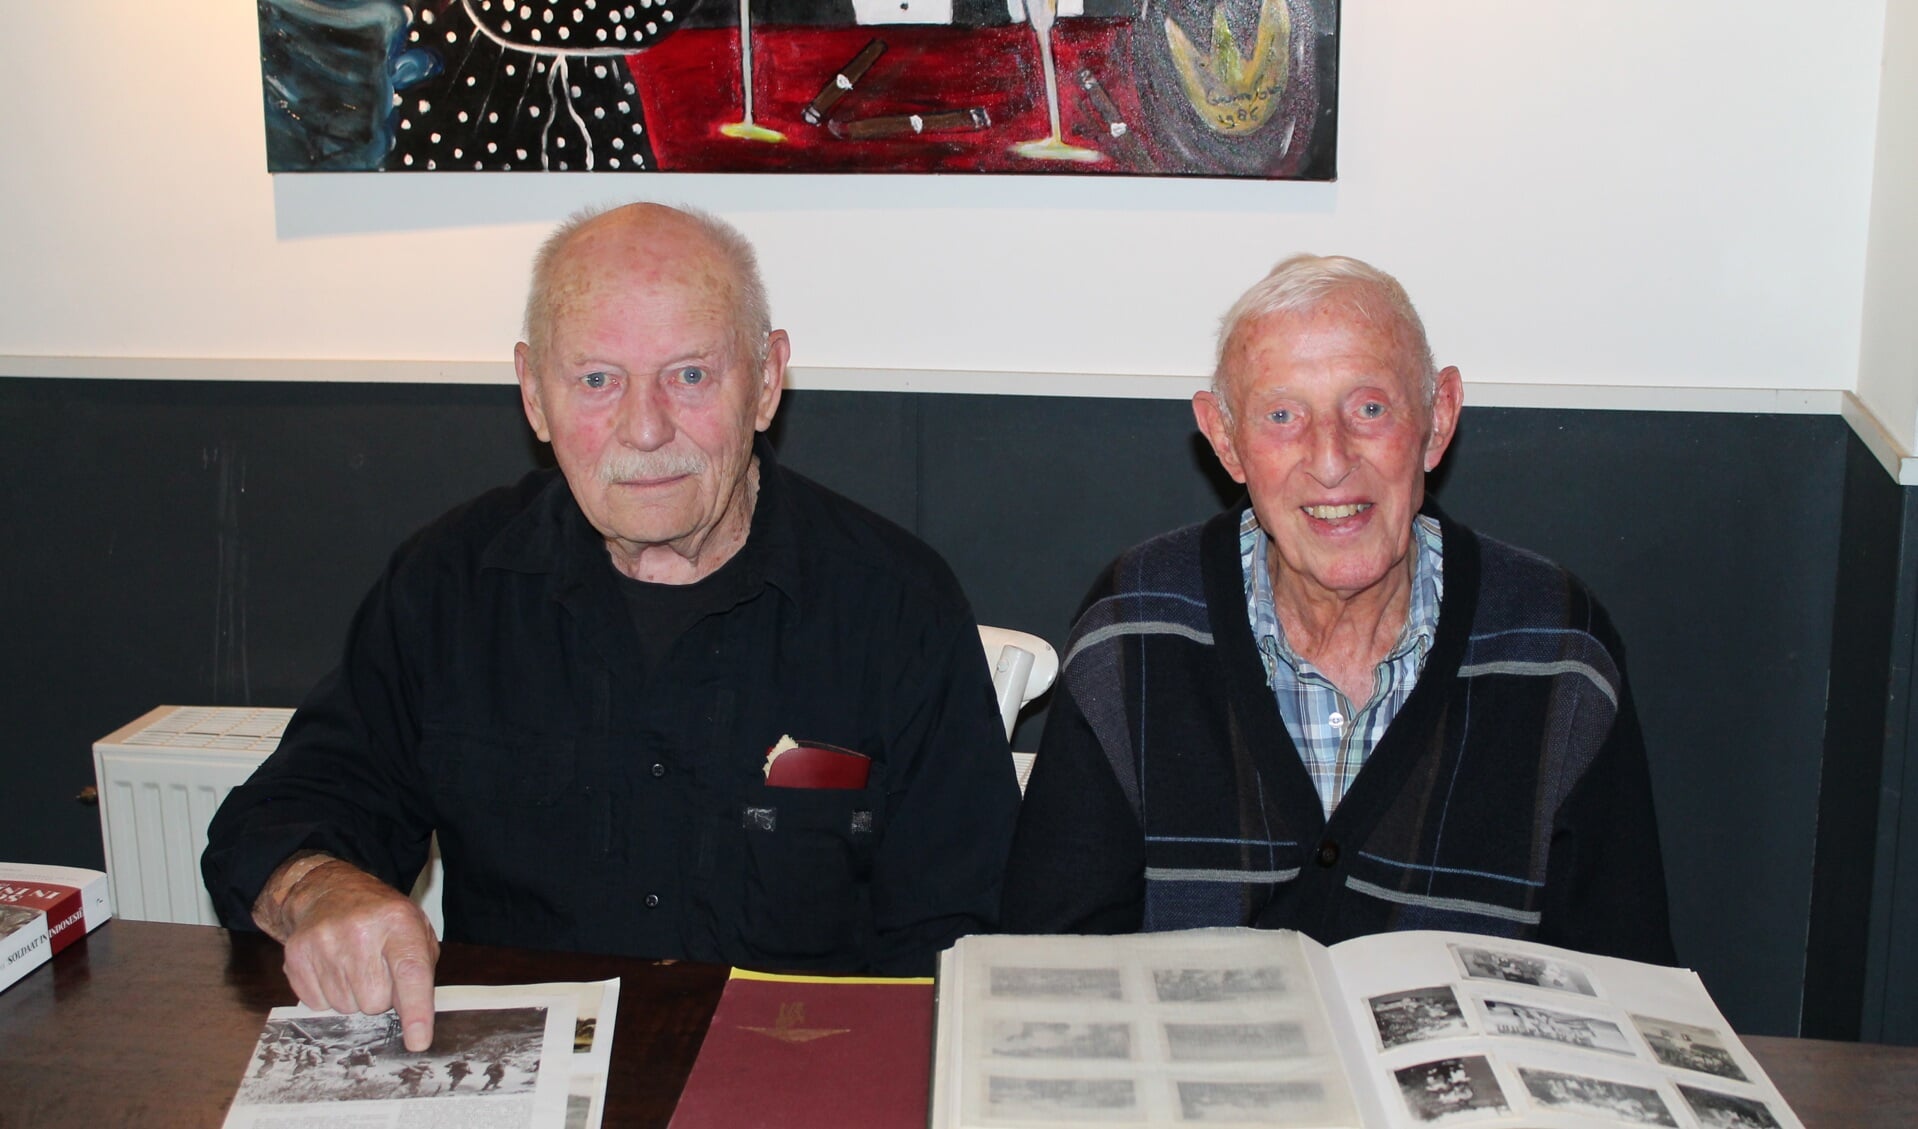 De heer Veldhoen en heer Stiemer laten foto's zien van vroeger. (Foto: Rodi Media/SZ) 